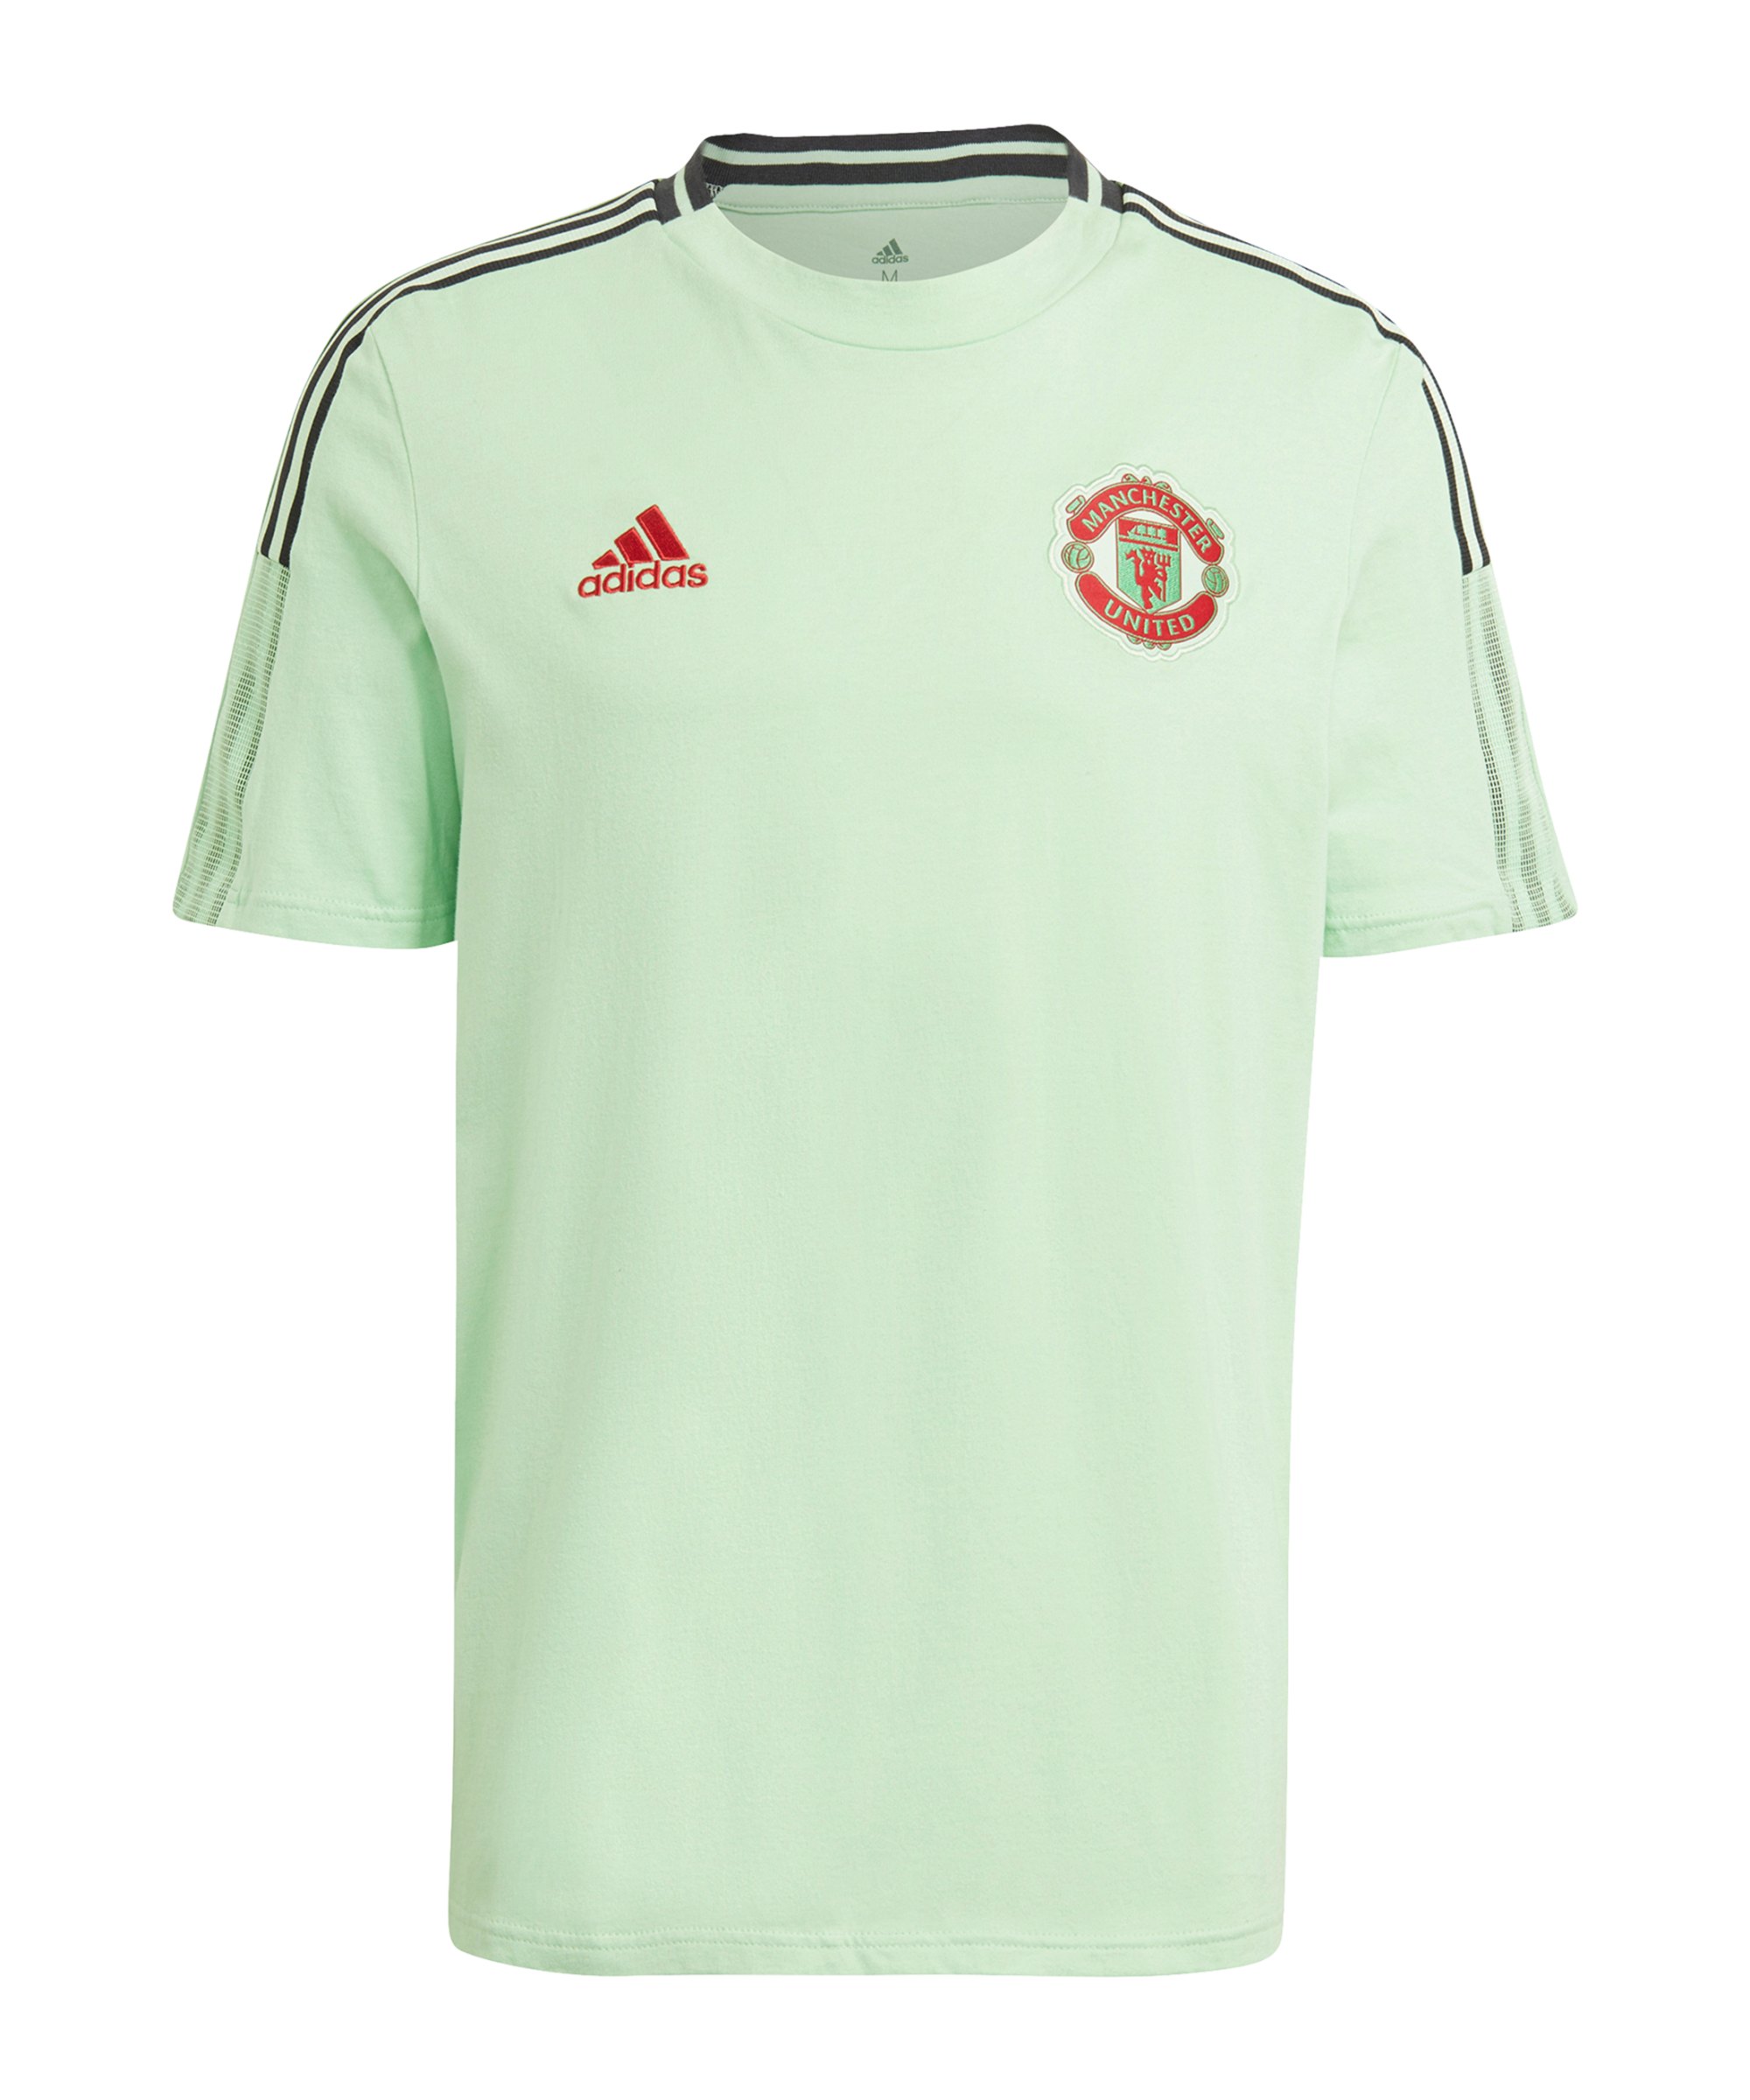 adidas Manchester United T-Shirt Hellgrün - gruen